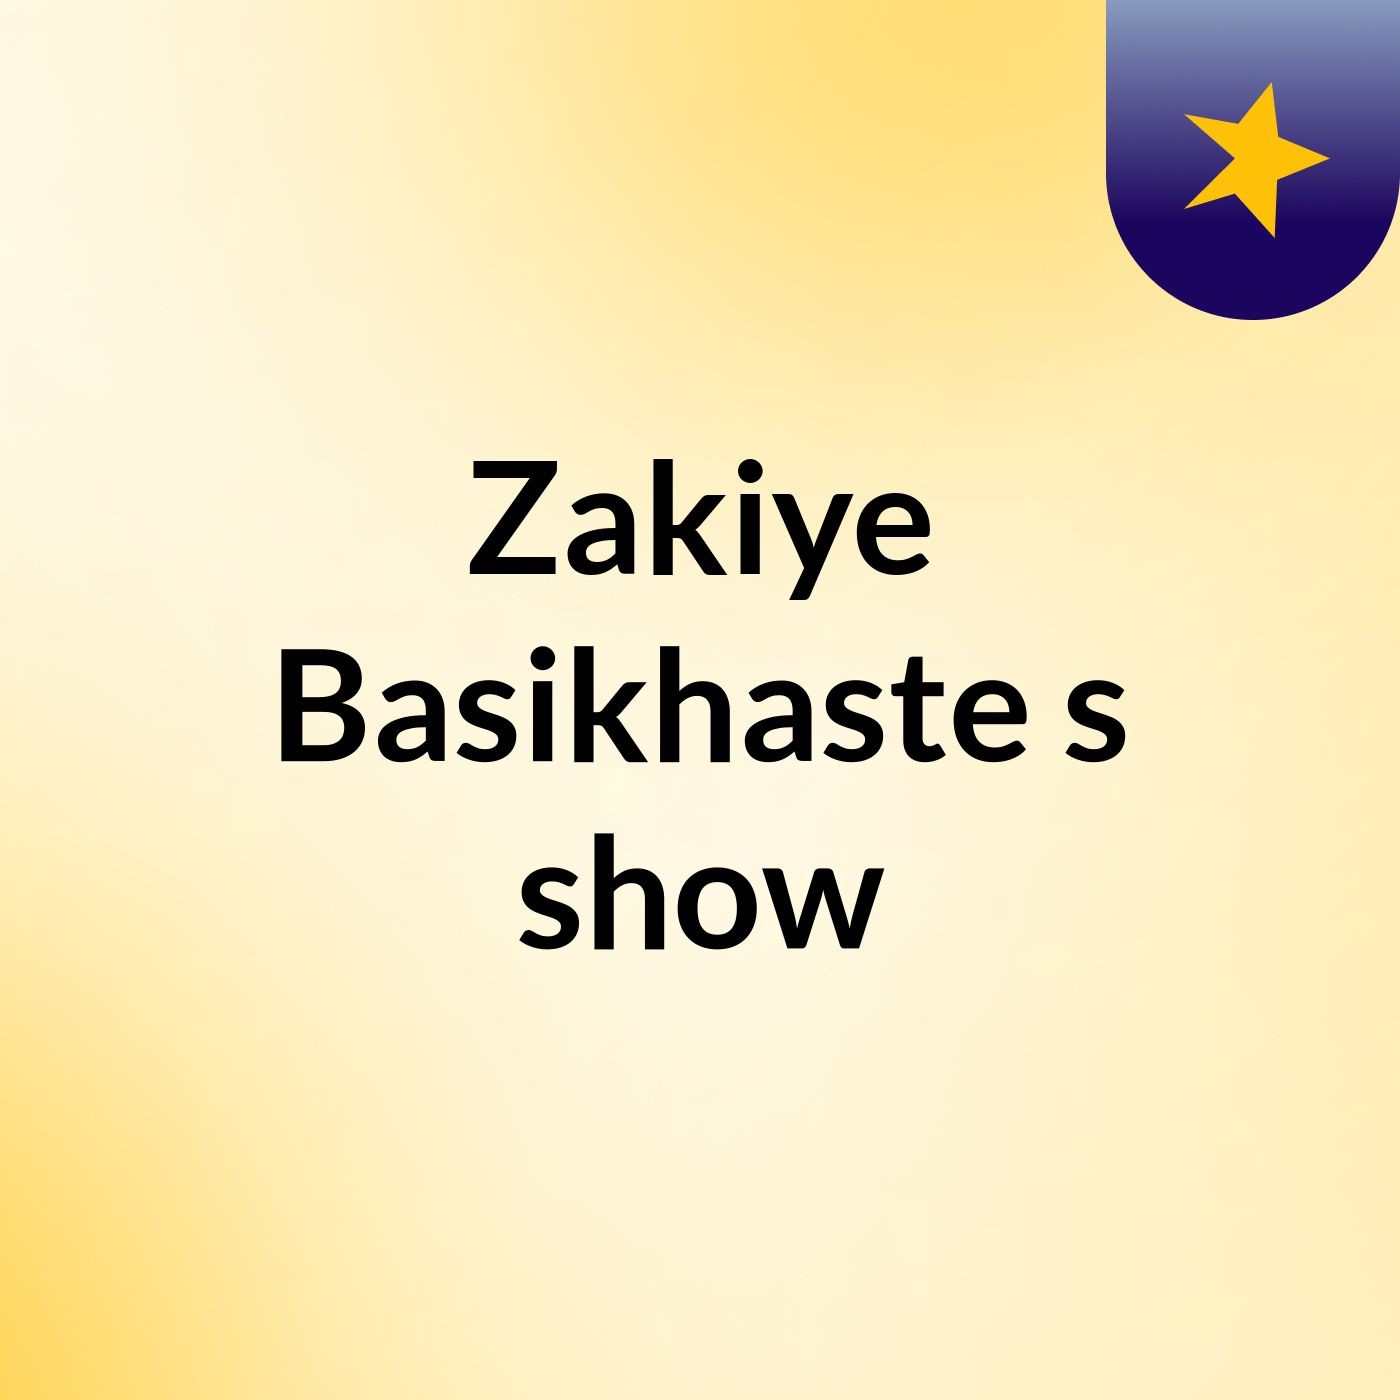 Zakiye Basikhaste's show